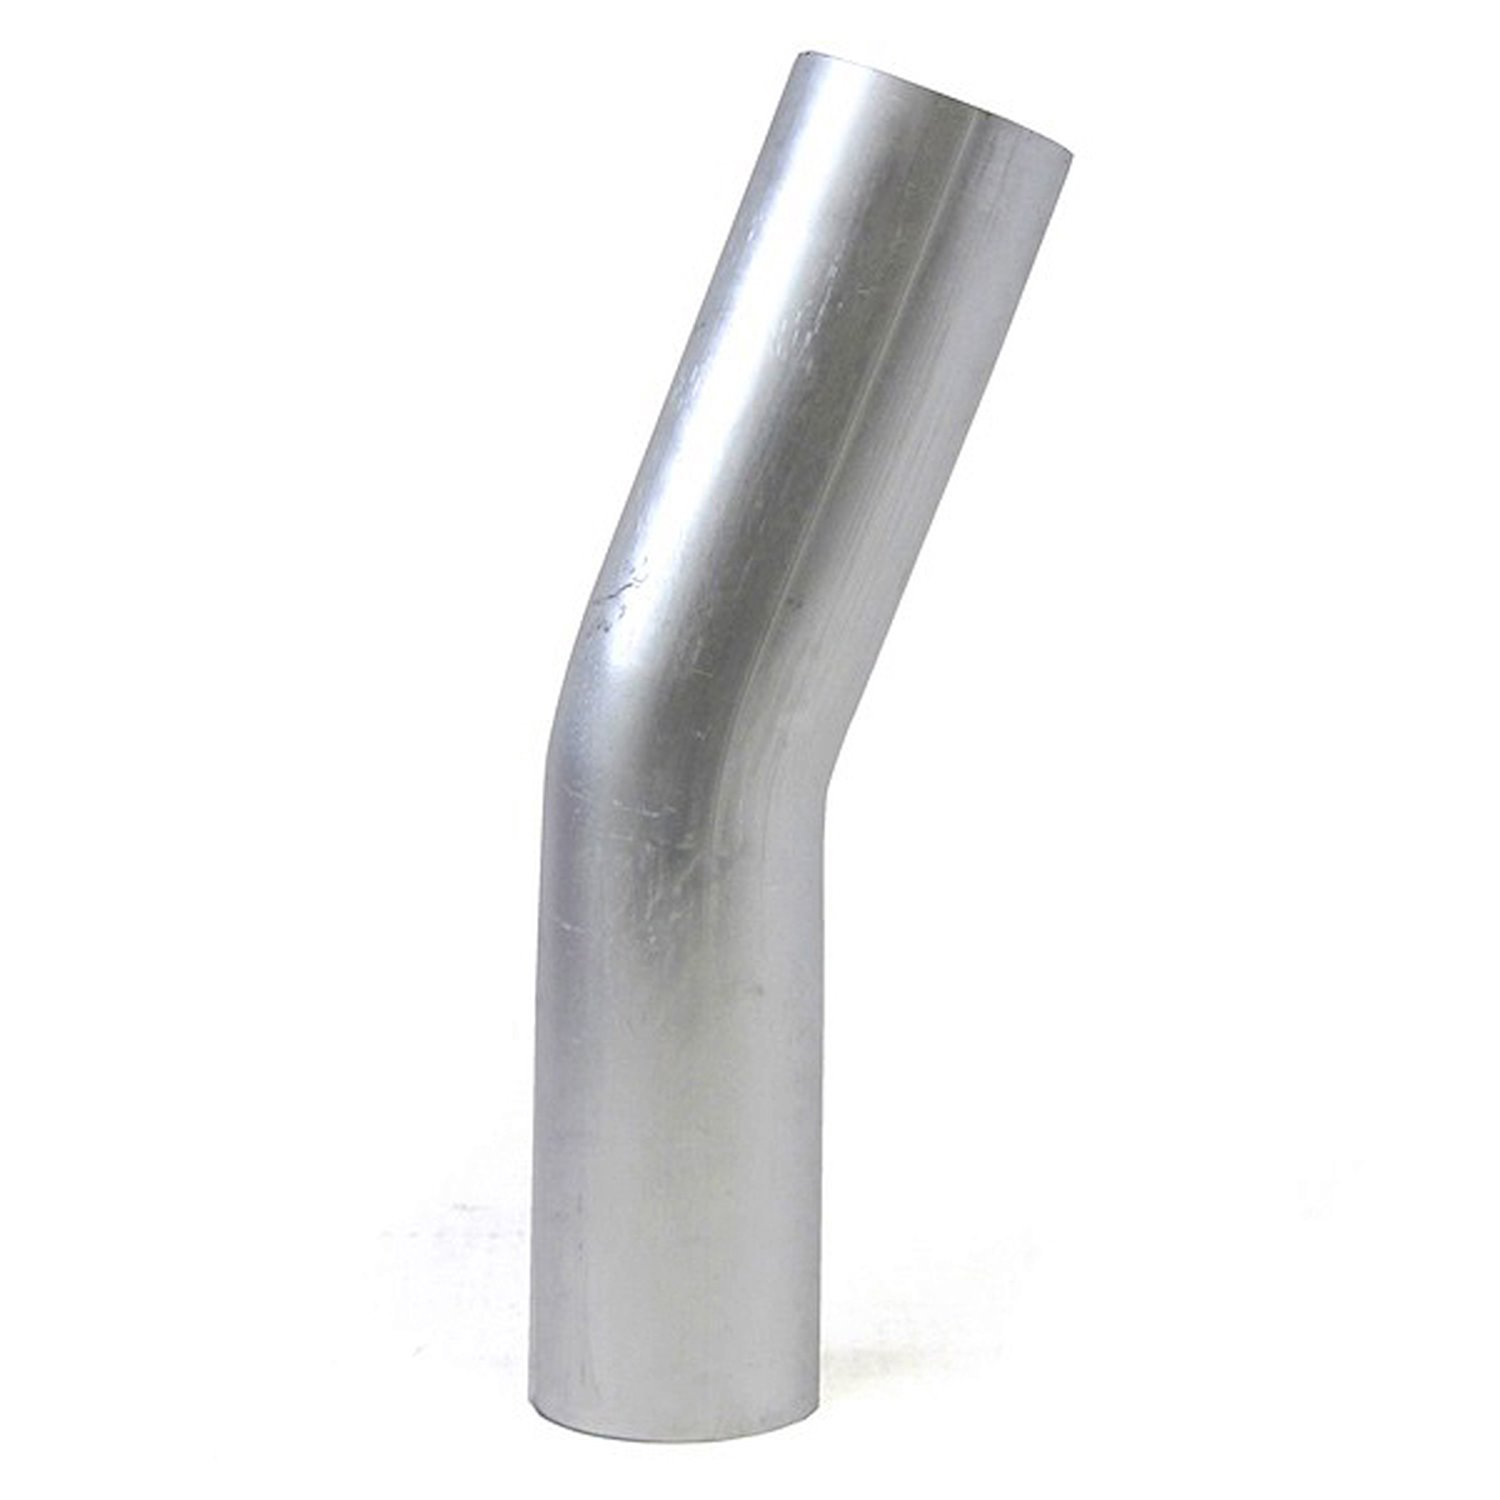 AT20-275-CLR-43 Aluminum Elbow Tube, 6061 Aluminum, 20-Degree Bend Elbow Tubing, 2-3/4 in. OD, Large Radius, 4-5/16 in. CLR